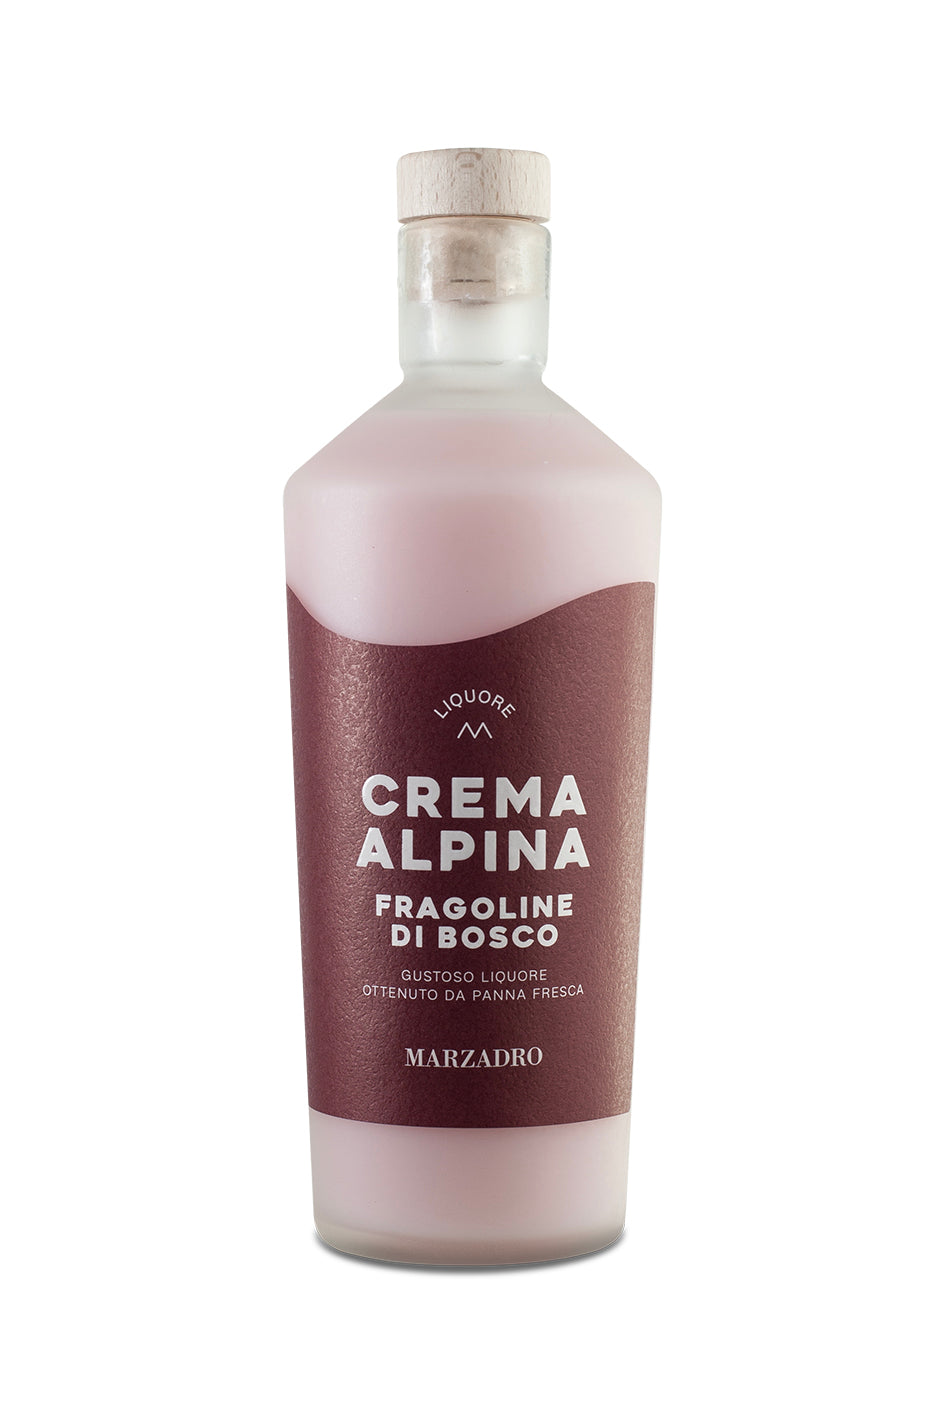 Marzadro Crema Alpina Fragoline di Bosco - 0,70 l